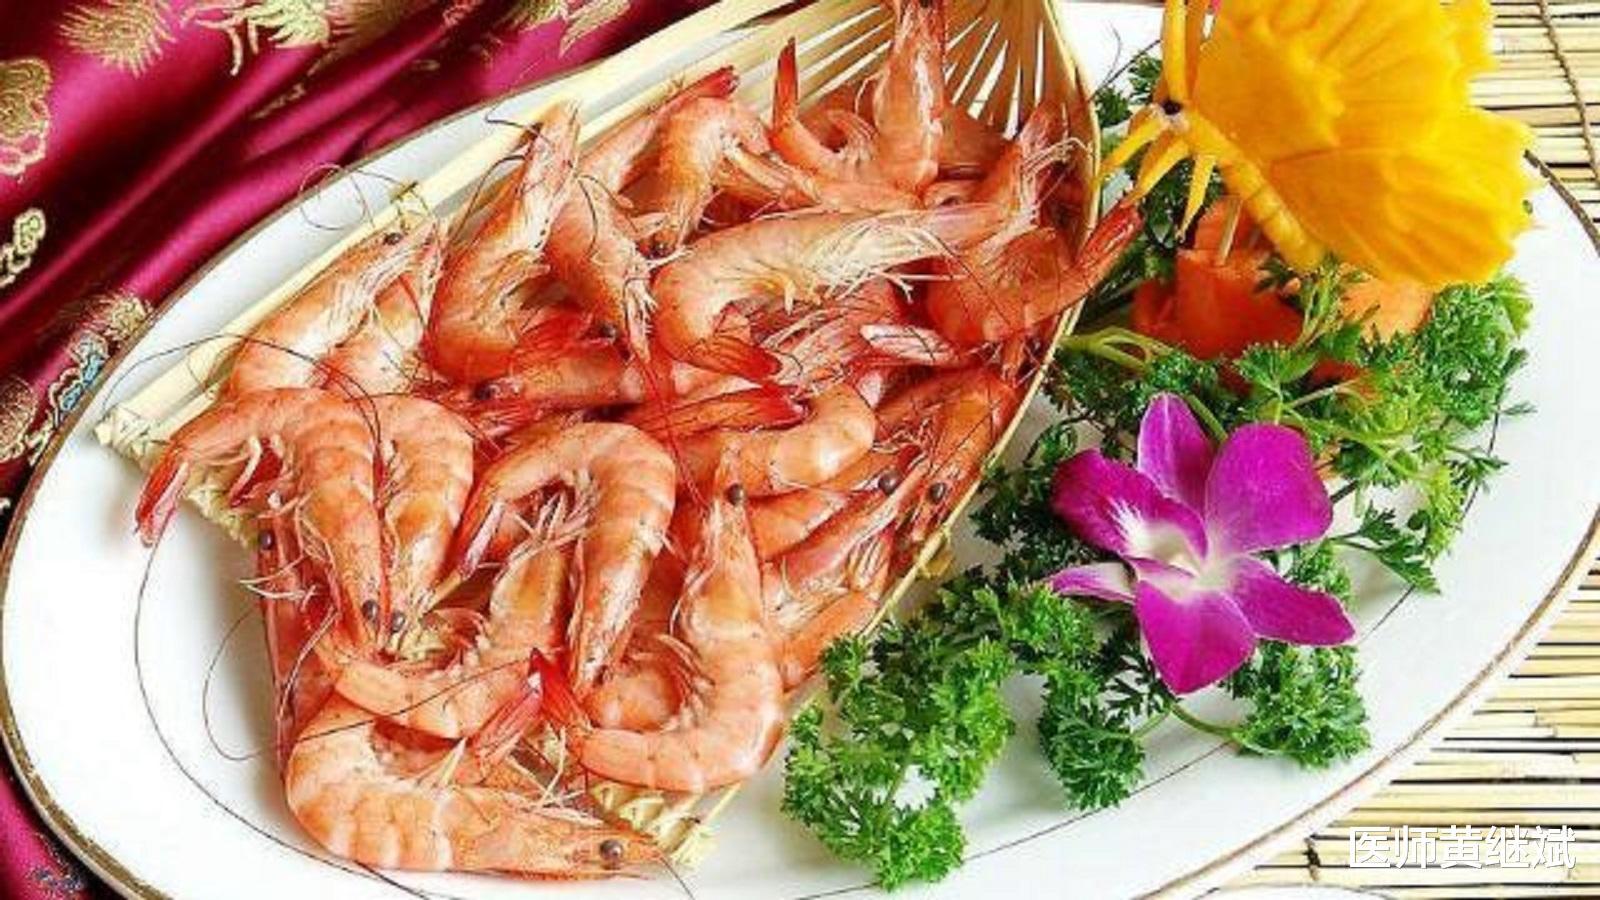 虾和什么不能一起吃 吃虾的禁忌蔬菜 - 大城生活网